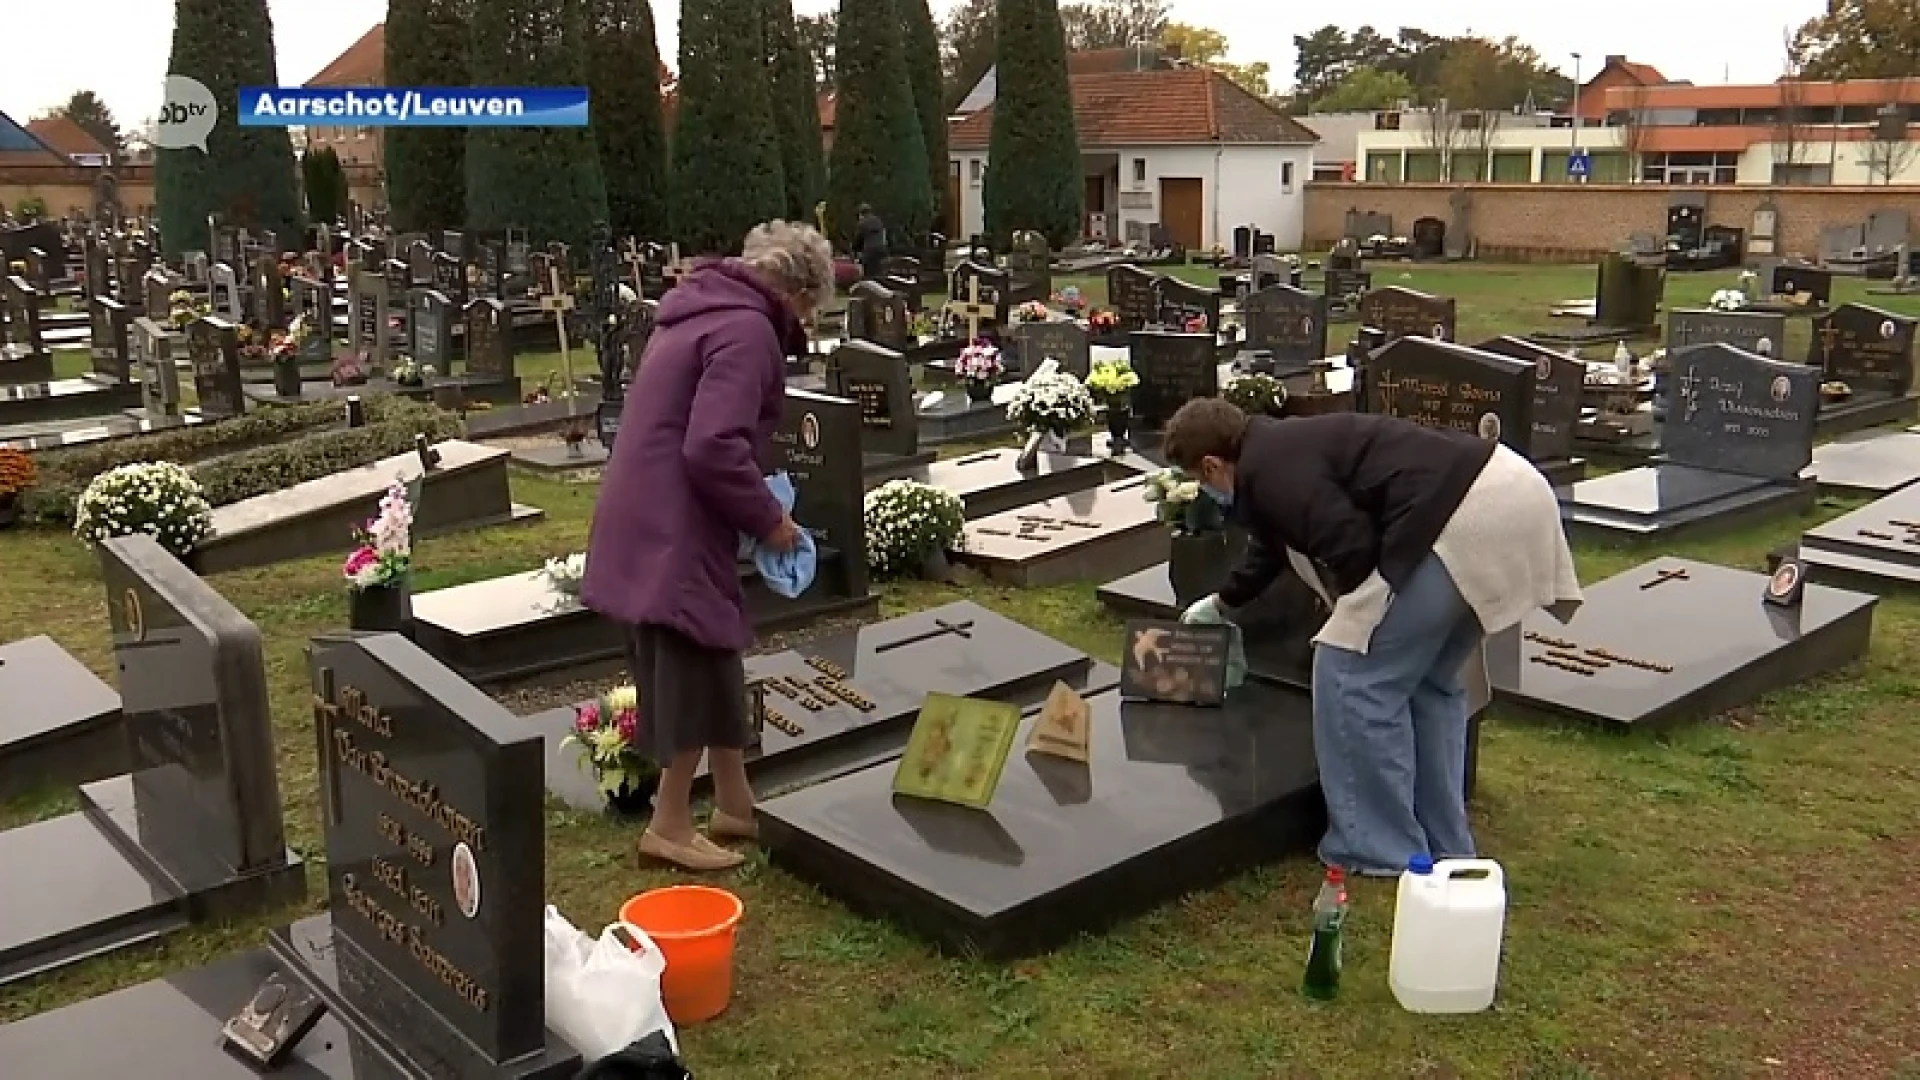 Regiogenoten trekken naar kerkhof om graven te poetsen of bloemetje te zetten tegen Allerheiligen